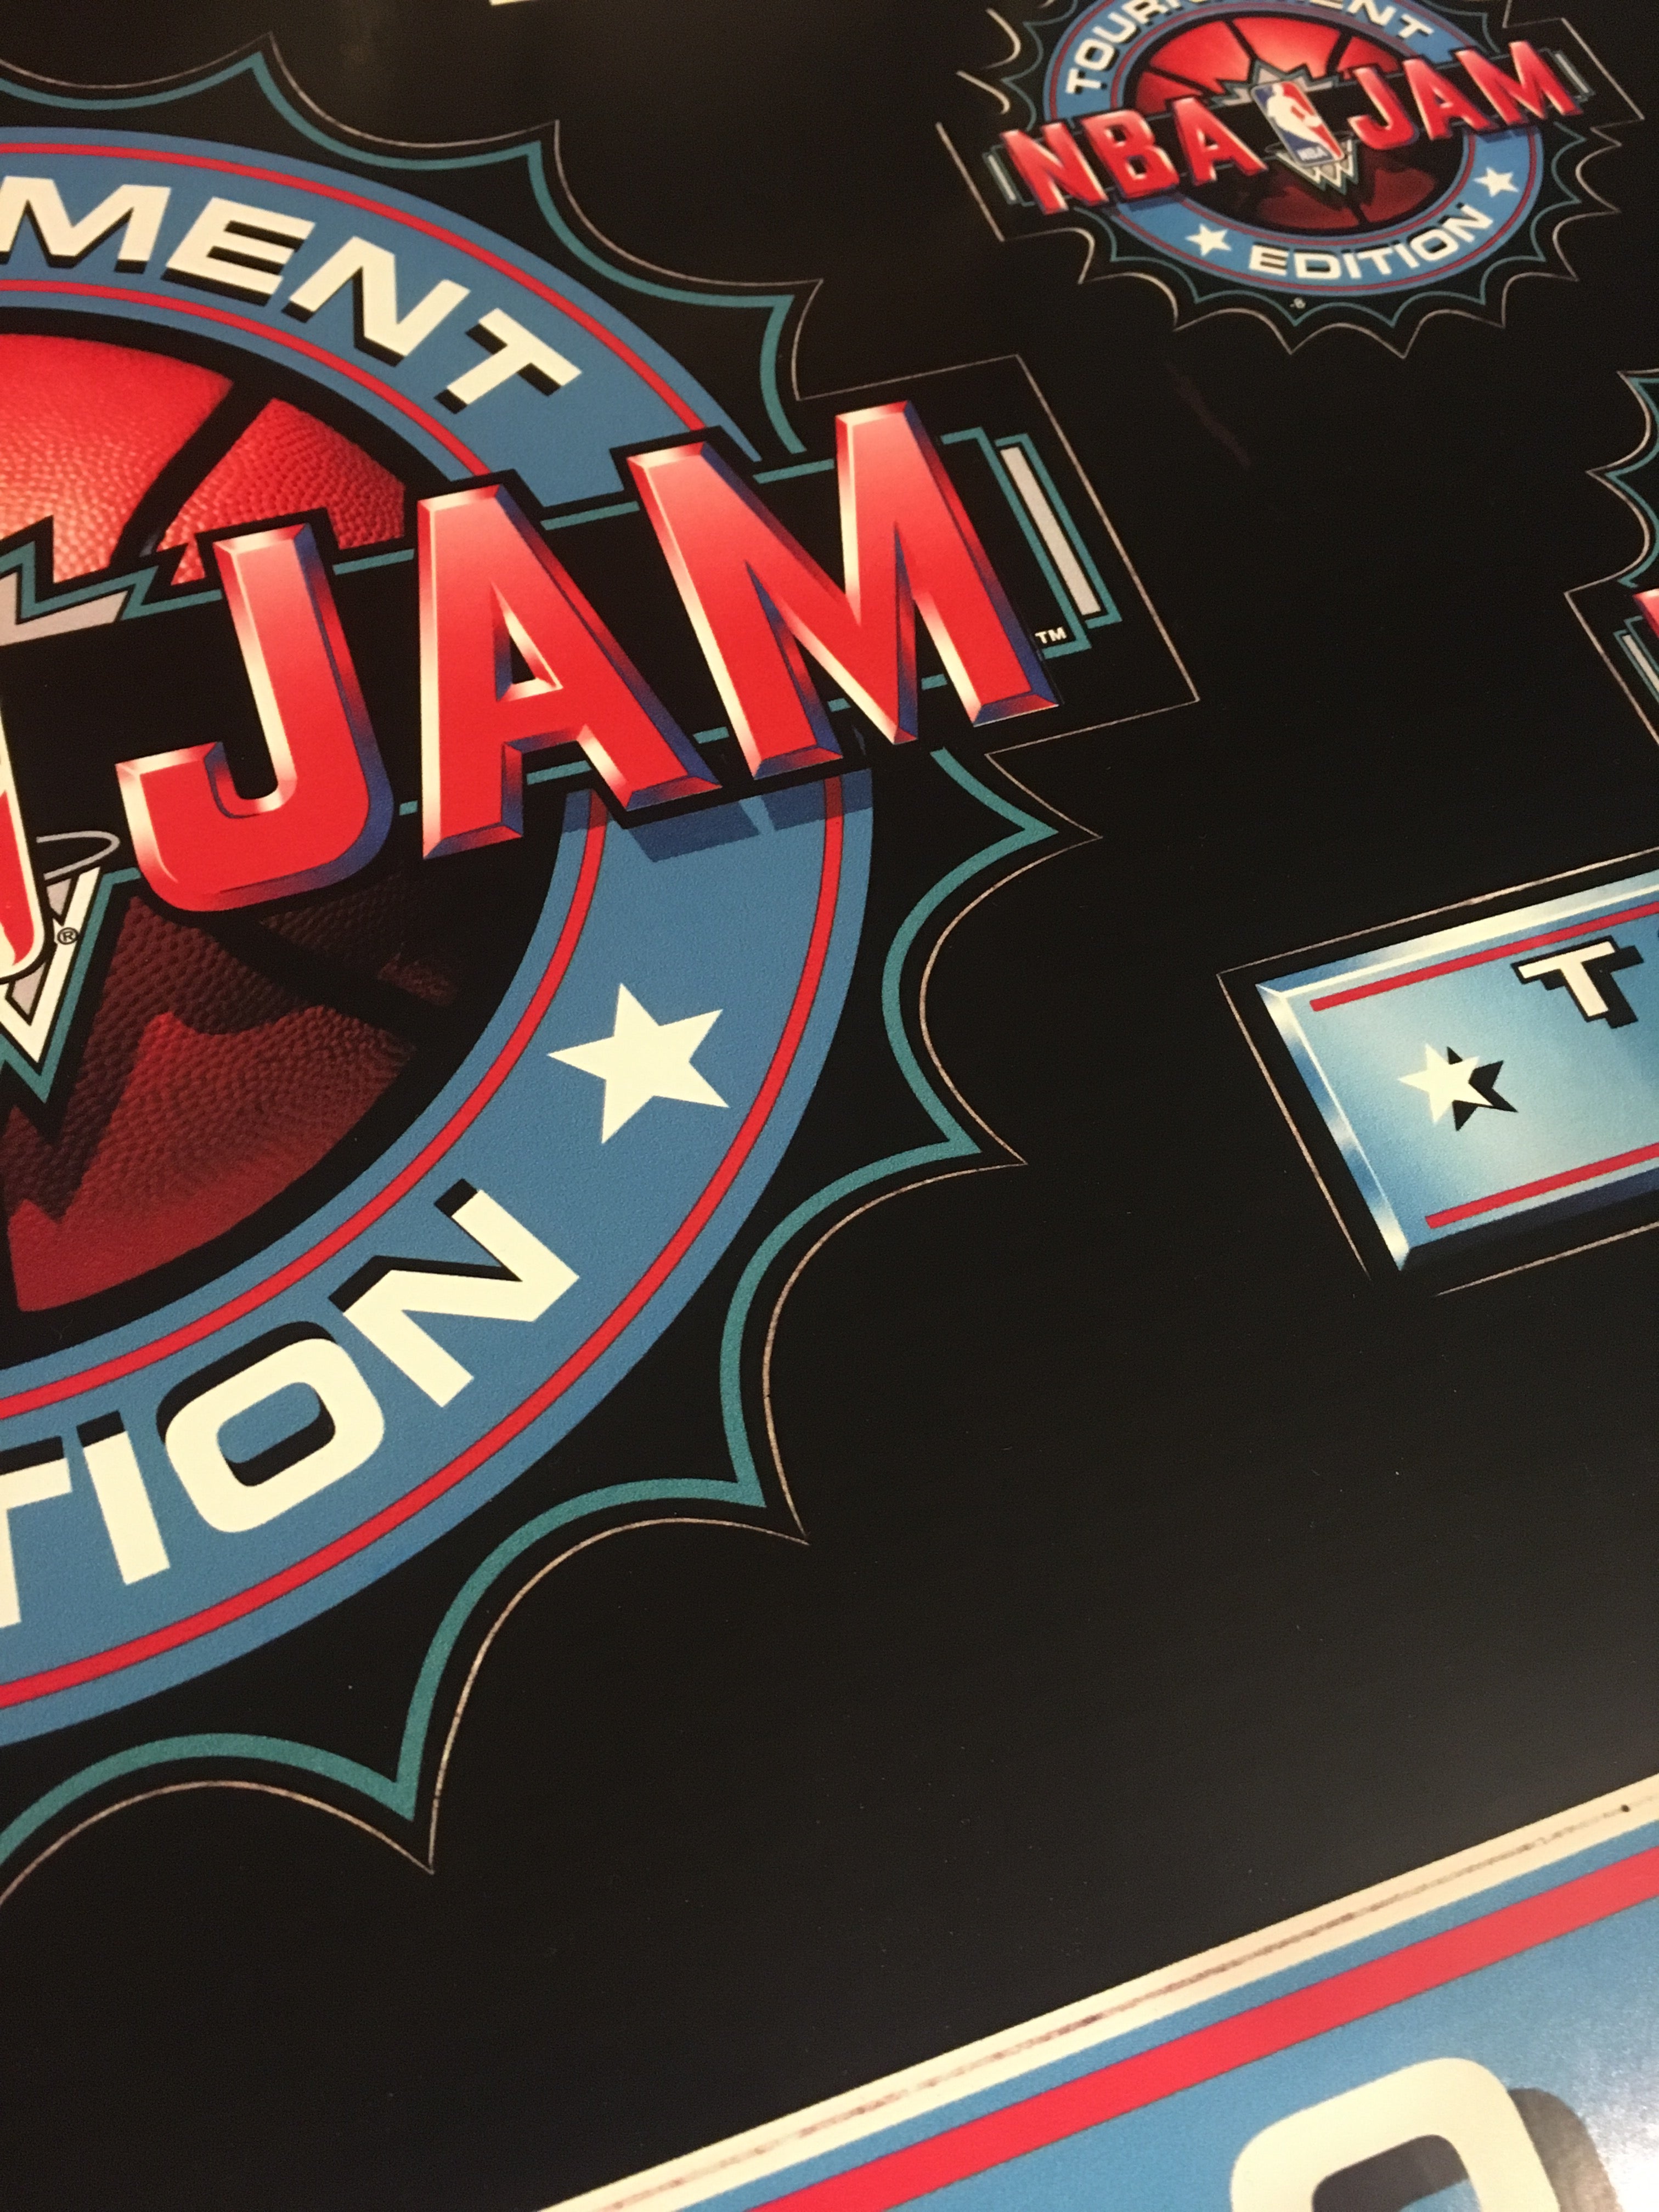 Art du kit de conversion NBA Jam Tournament Edition